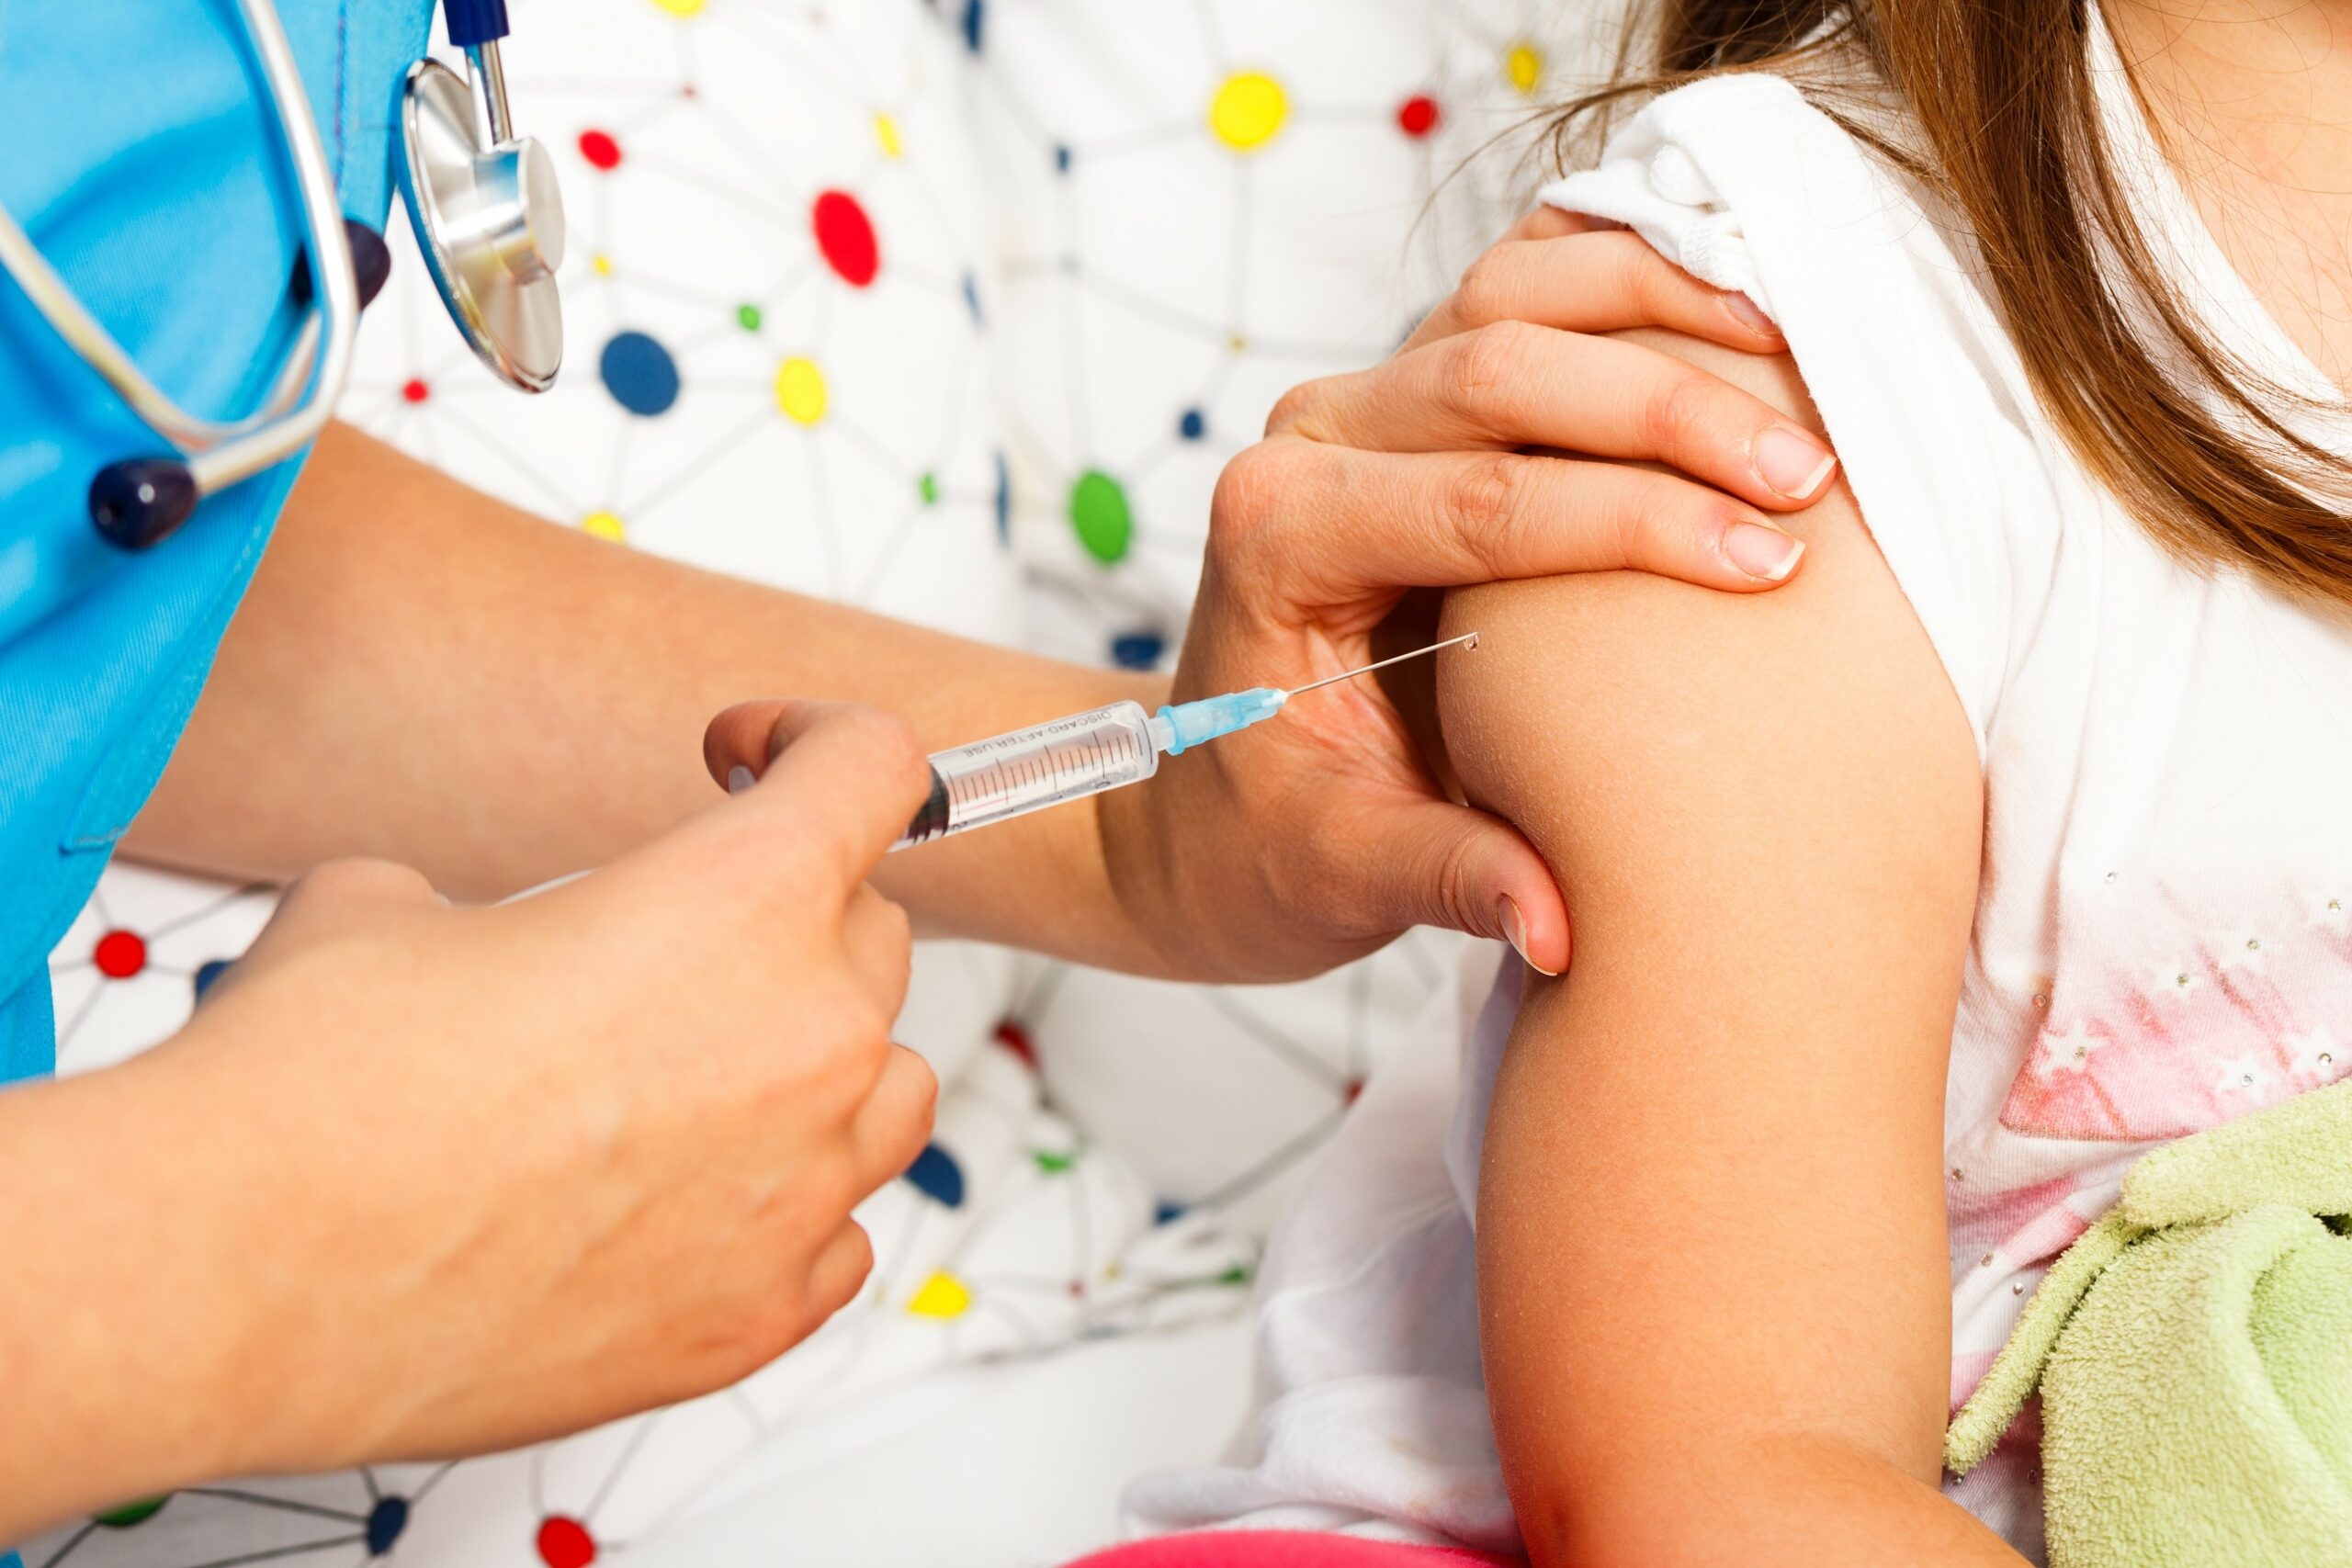 El TC respalda a un menor que quiso vacunarse de covid-19 contra el criterio de su madre